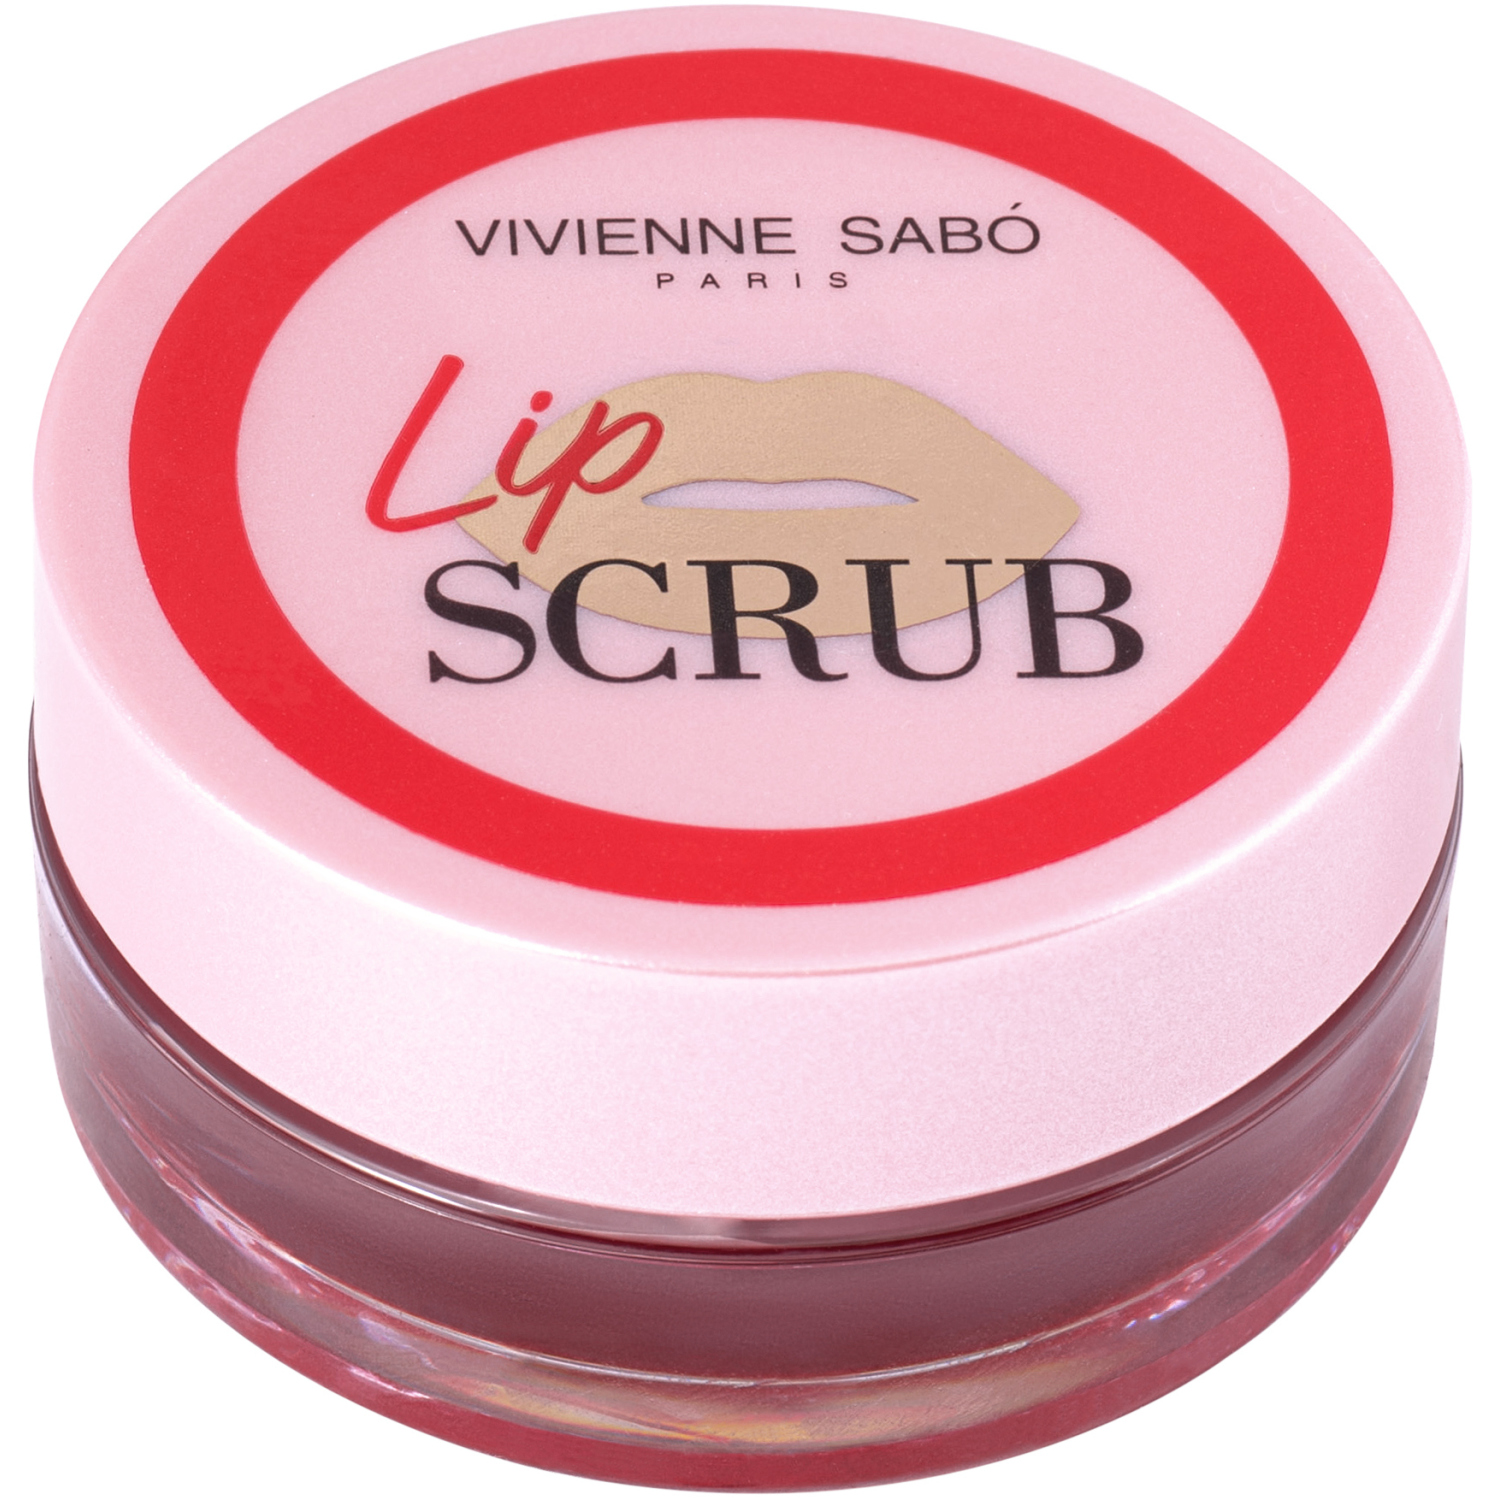 Скраб для губ Vivienne Sabo Lip Scrub, разглаживает, смягчает и тонизирует кожу губ, с масла жожоба и ши, тон 01, красный, 3гр. ваза для ов губы гипс бело красный